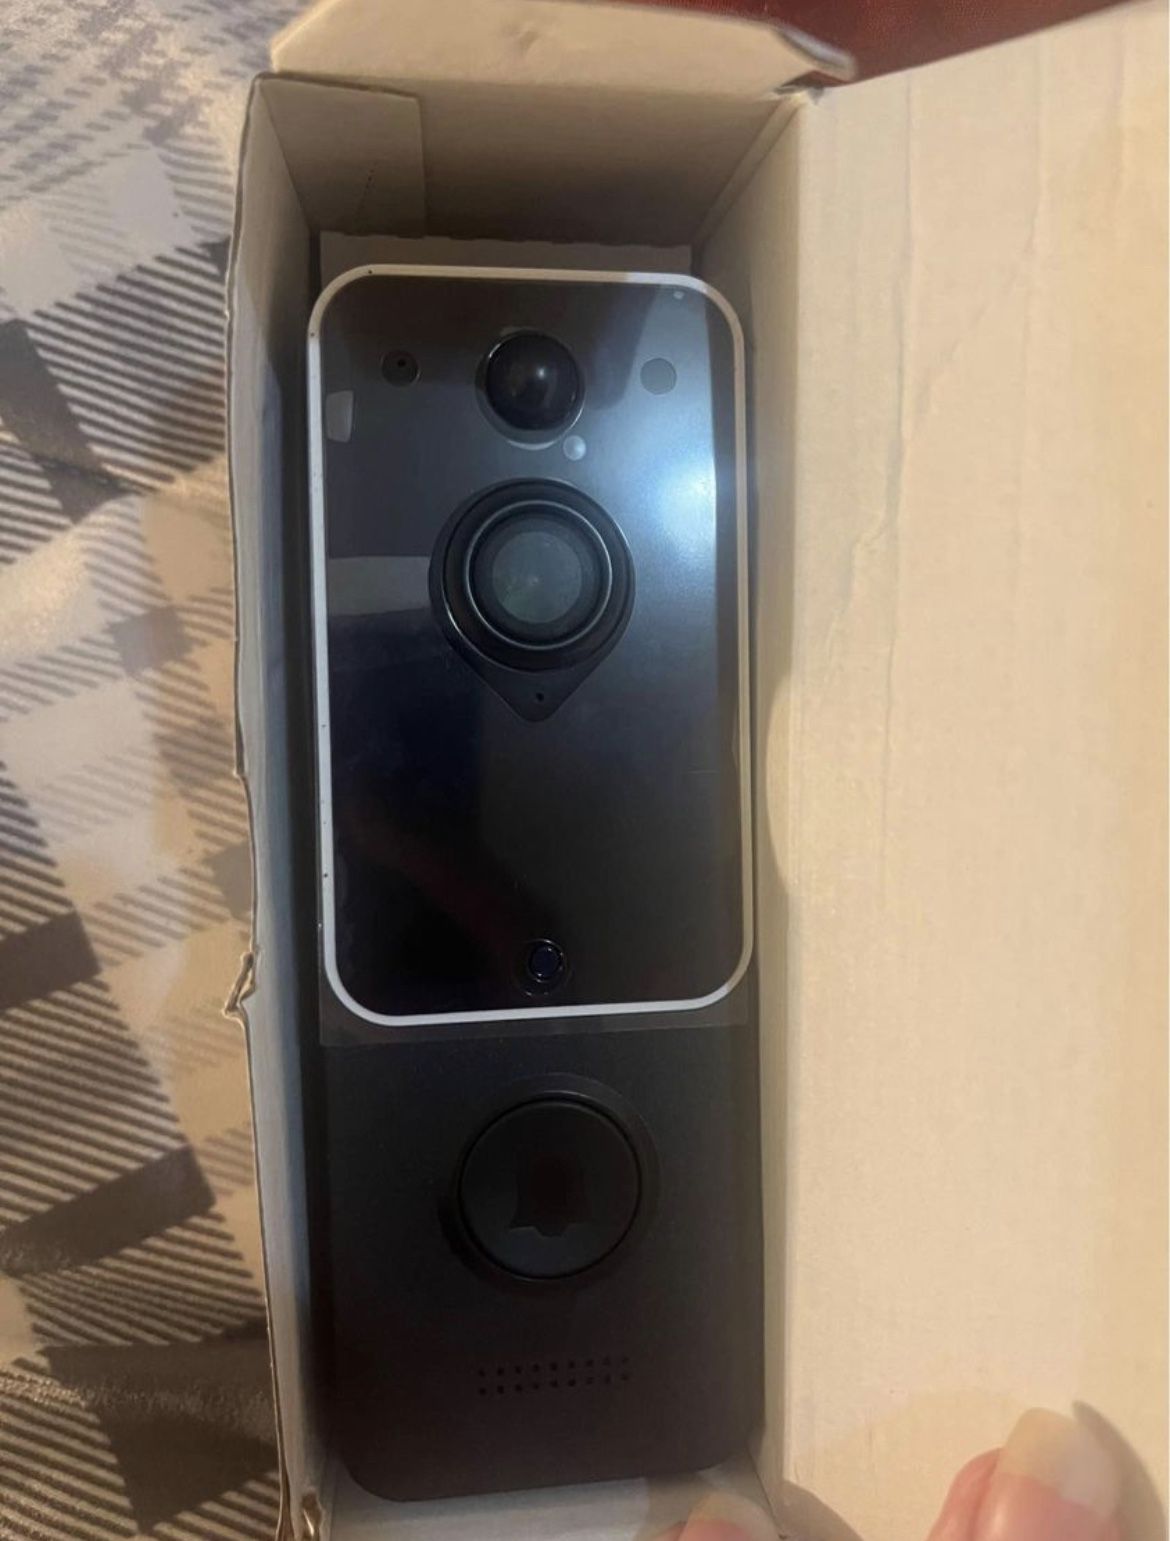 Eken Smart Video Doorbell Camera 